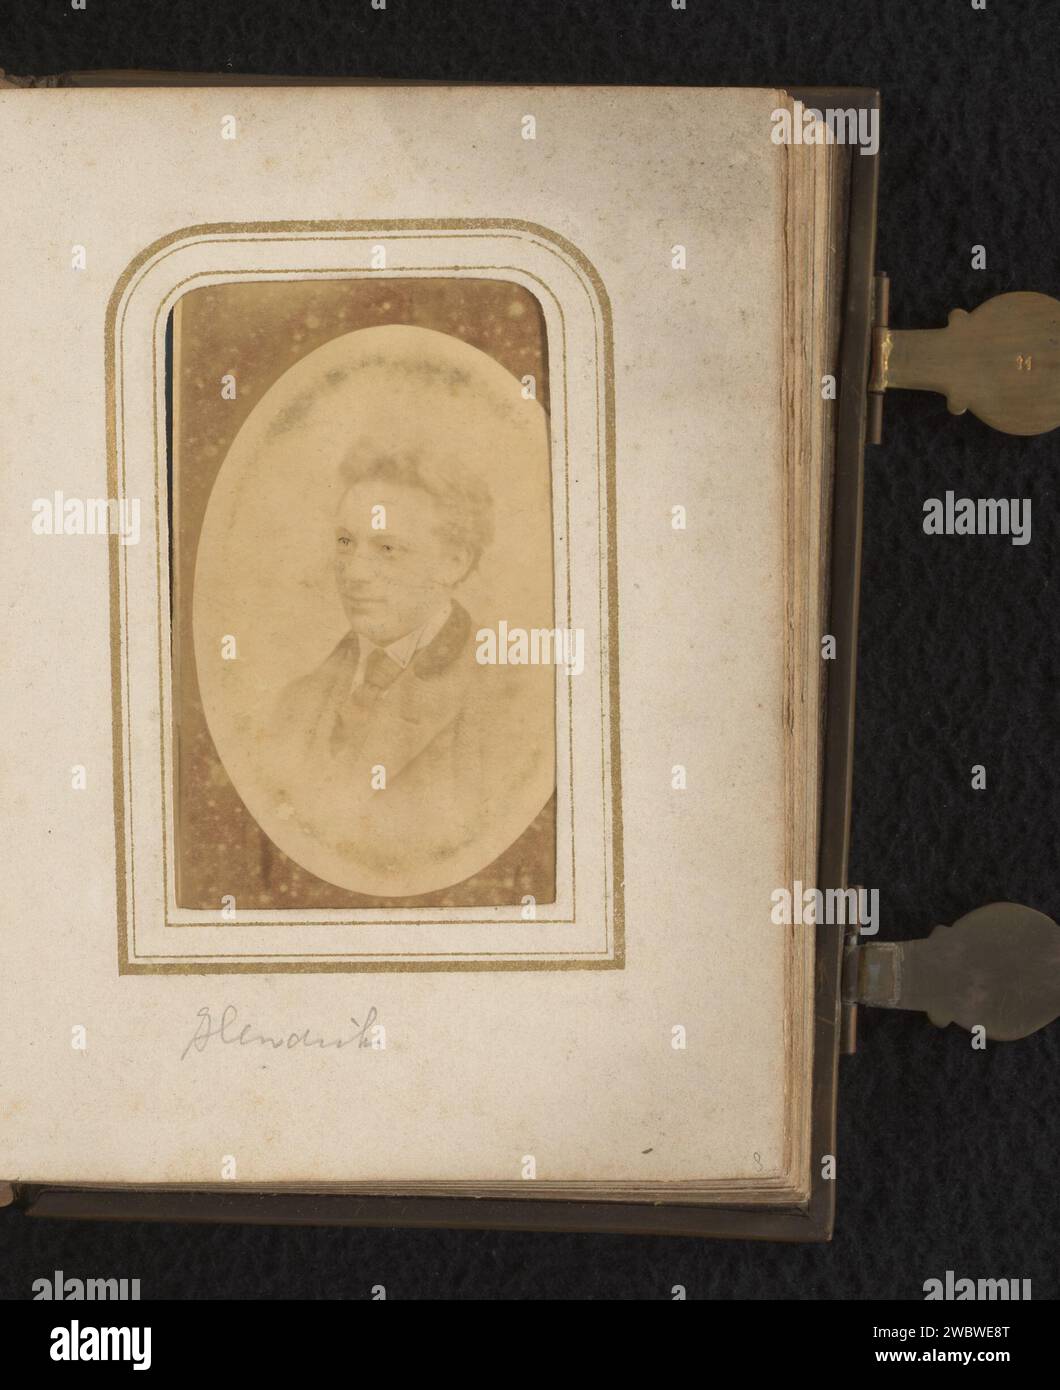 Porträt eines Mannes, P. Weijnen & Fils, 1854 - 1865 Fotografie. Visitenkarte dieses Foto ist Teil eines Albums. Maastrichter fotografischer Support. Pappalbumen drucken historische Personen. Erwachsener Mann Stockfoto